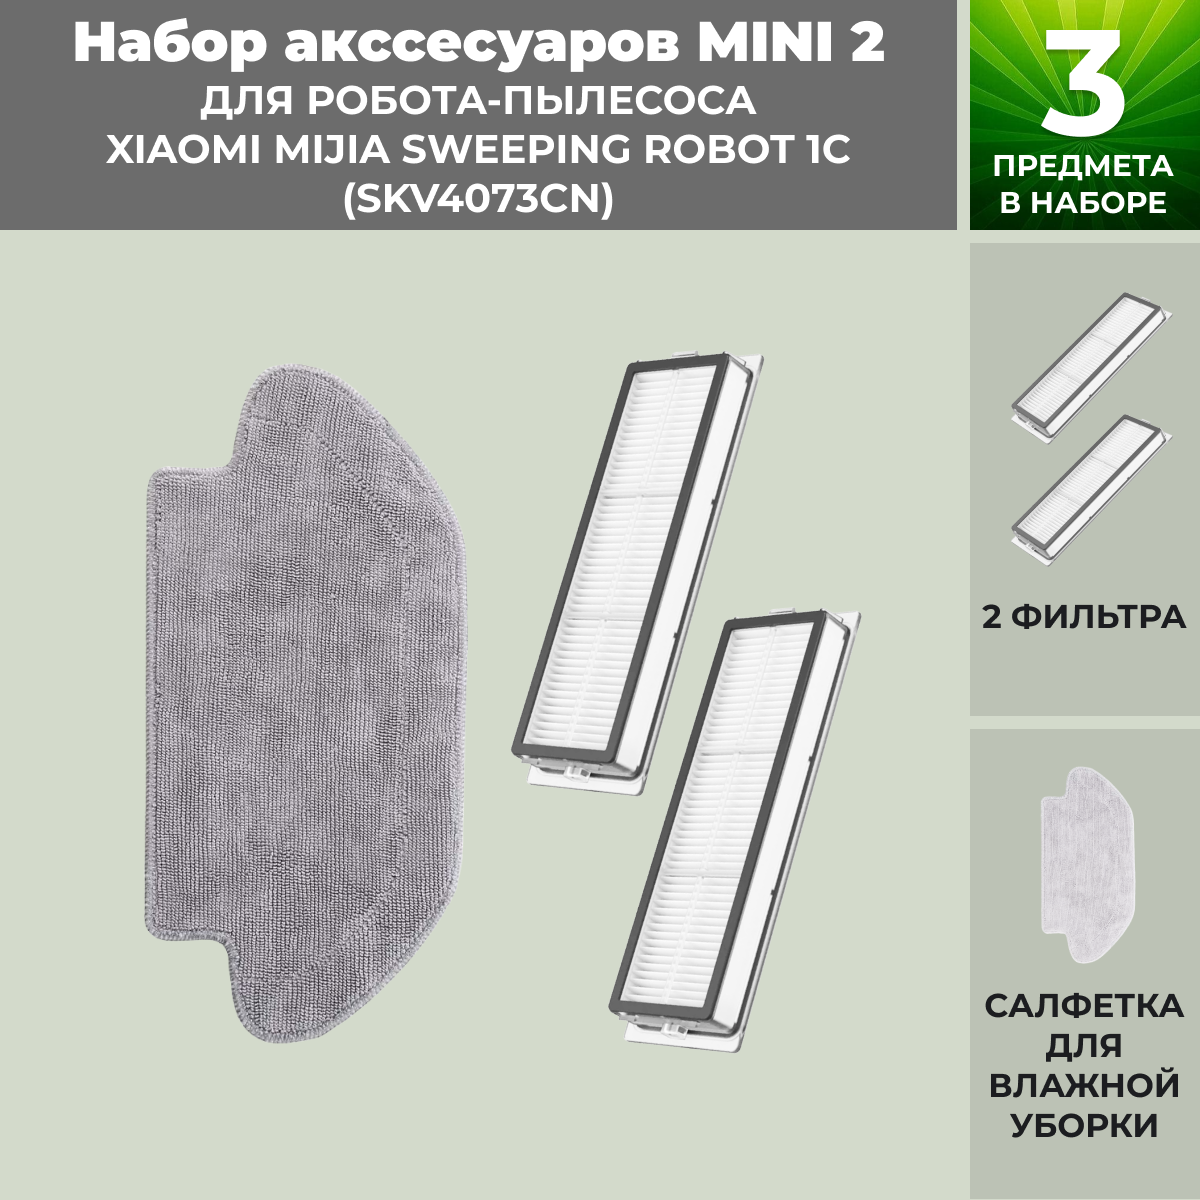 Набор аксессуаров Mini 2 для робота-пылесоса Xiaomi Mijia Sweeping Robot 1C (SKV4073CN) 558787, фото 1